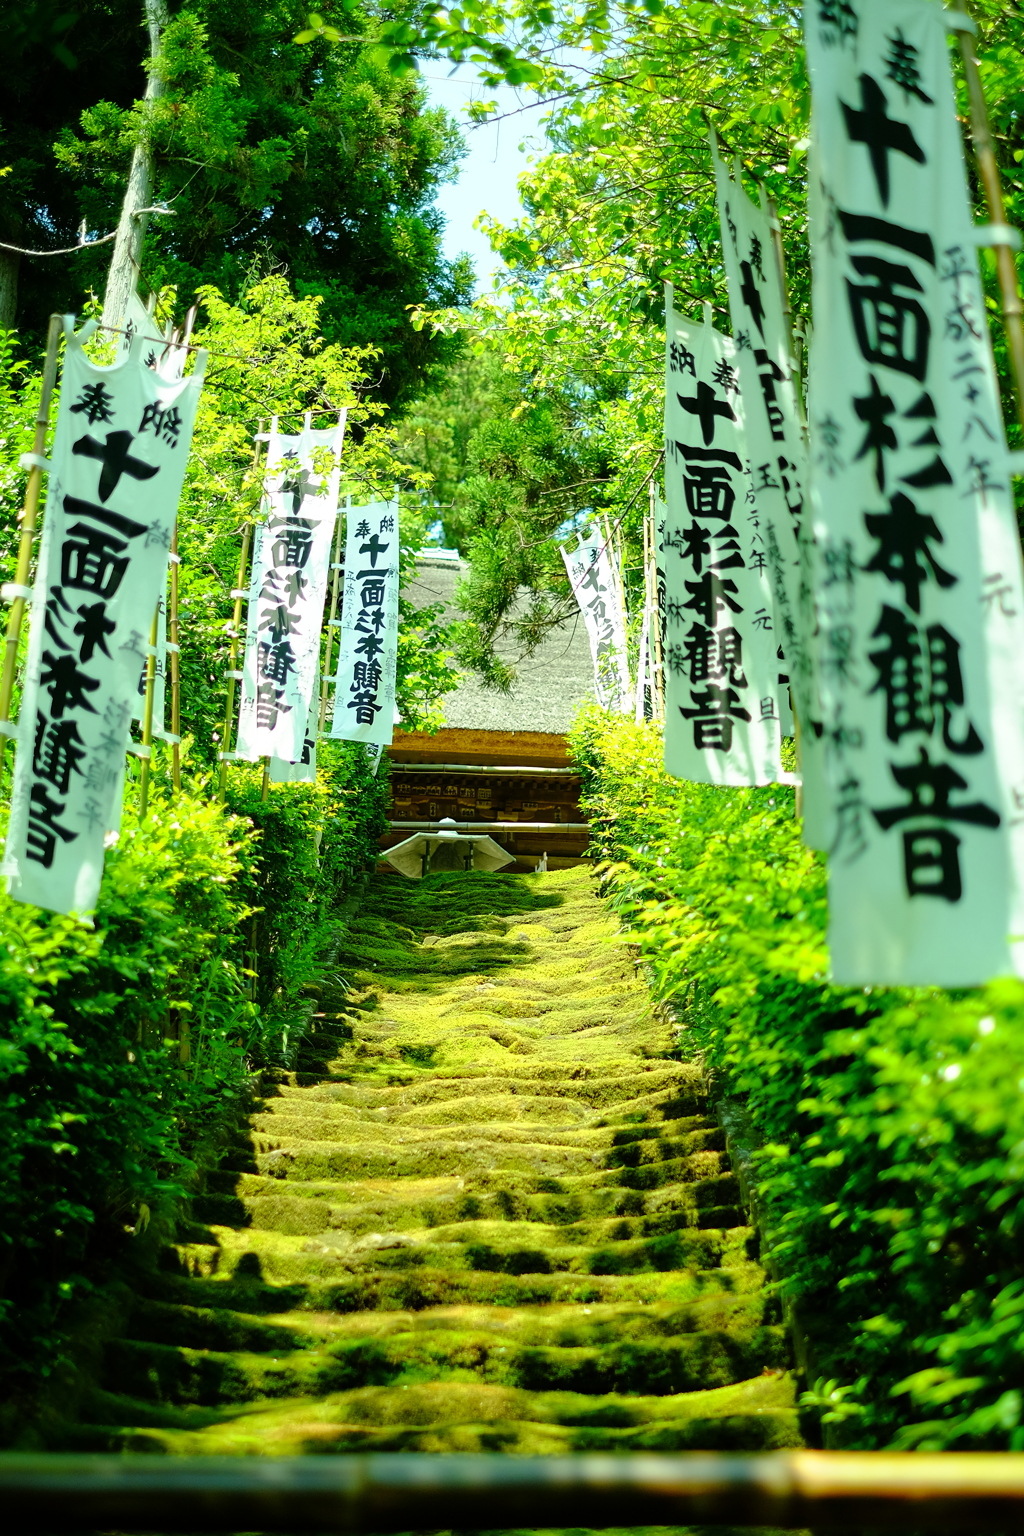 鎌倉あじさい散歩 杉本寺 苔の階段 By Genostar Id 写真共有サイト Photohito